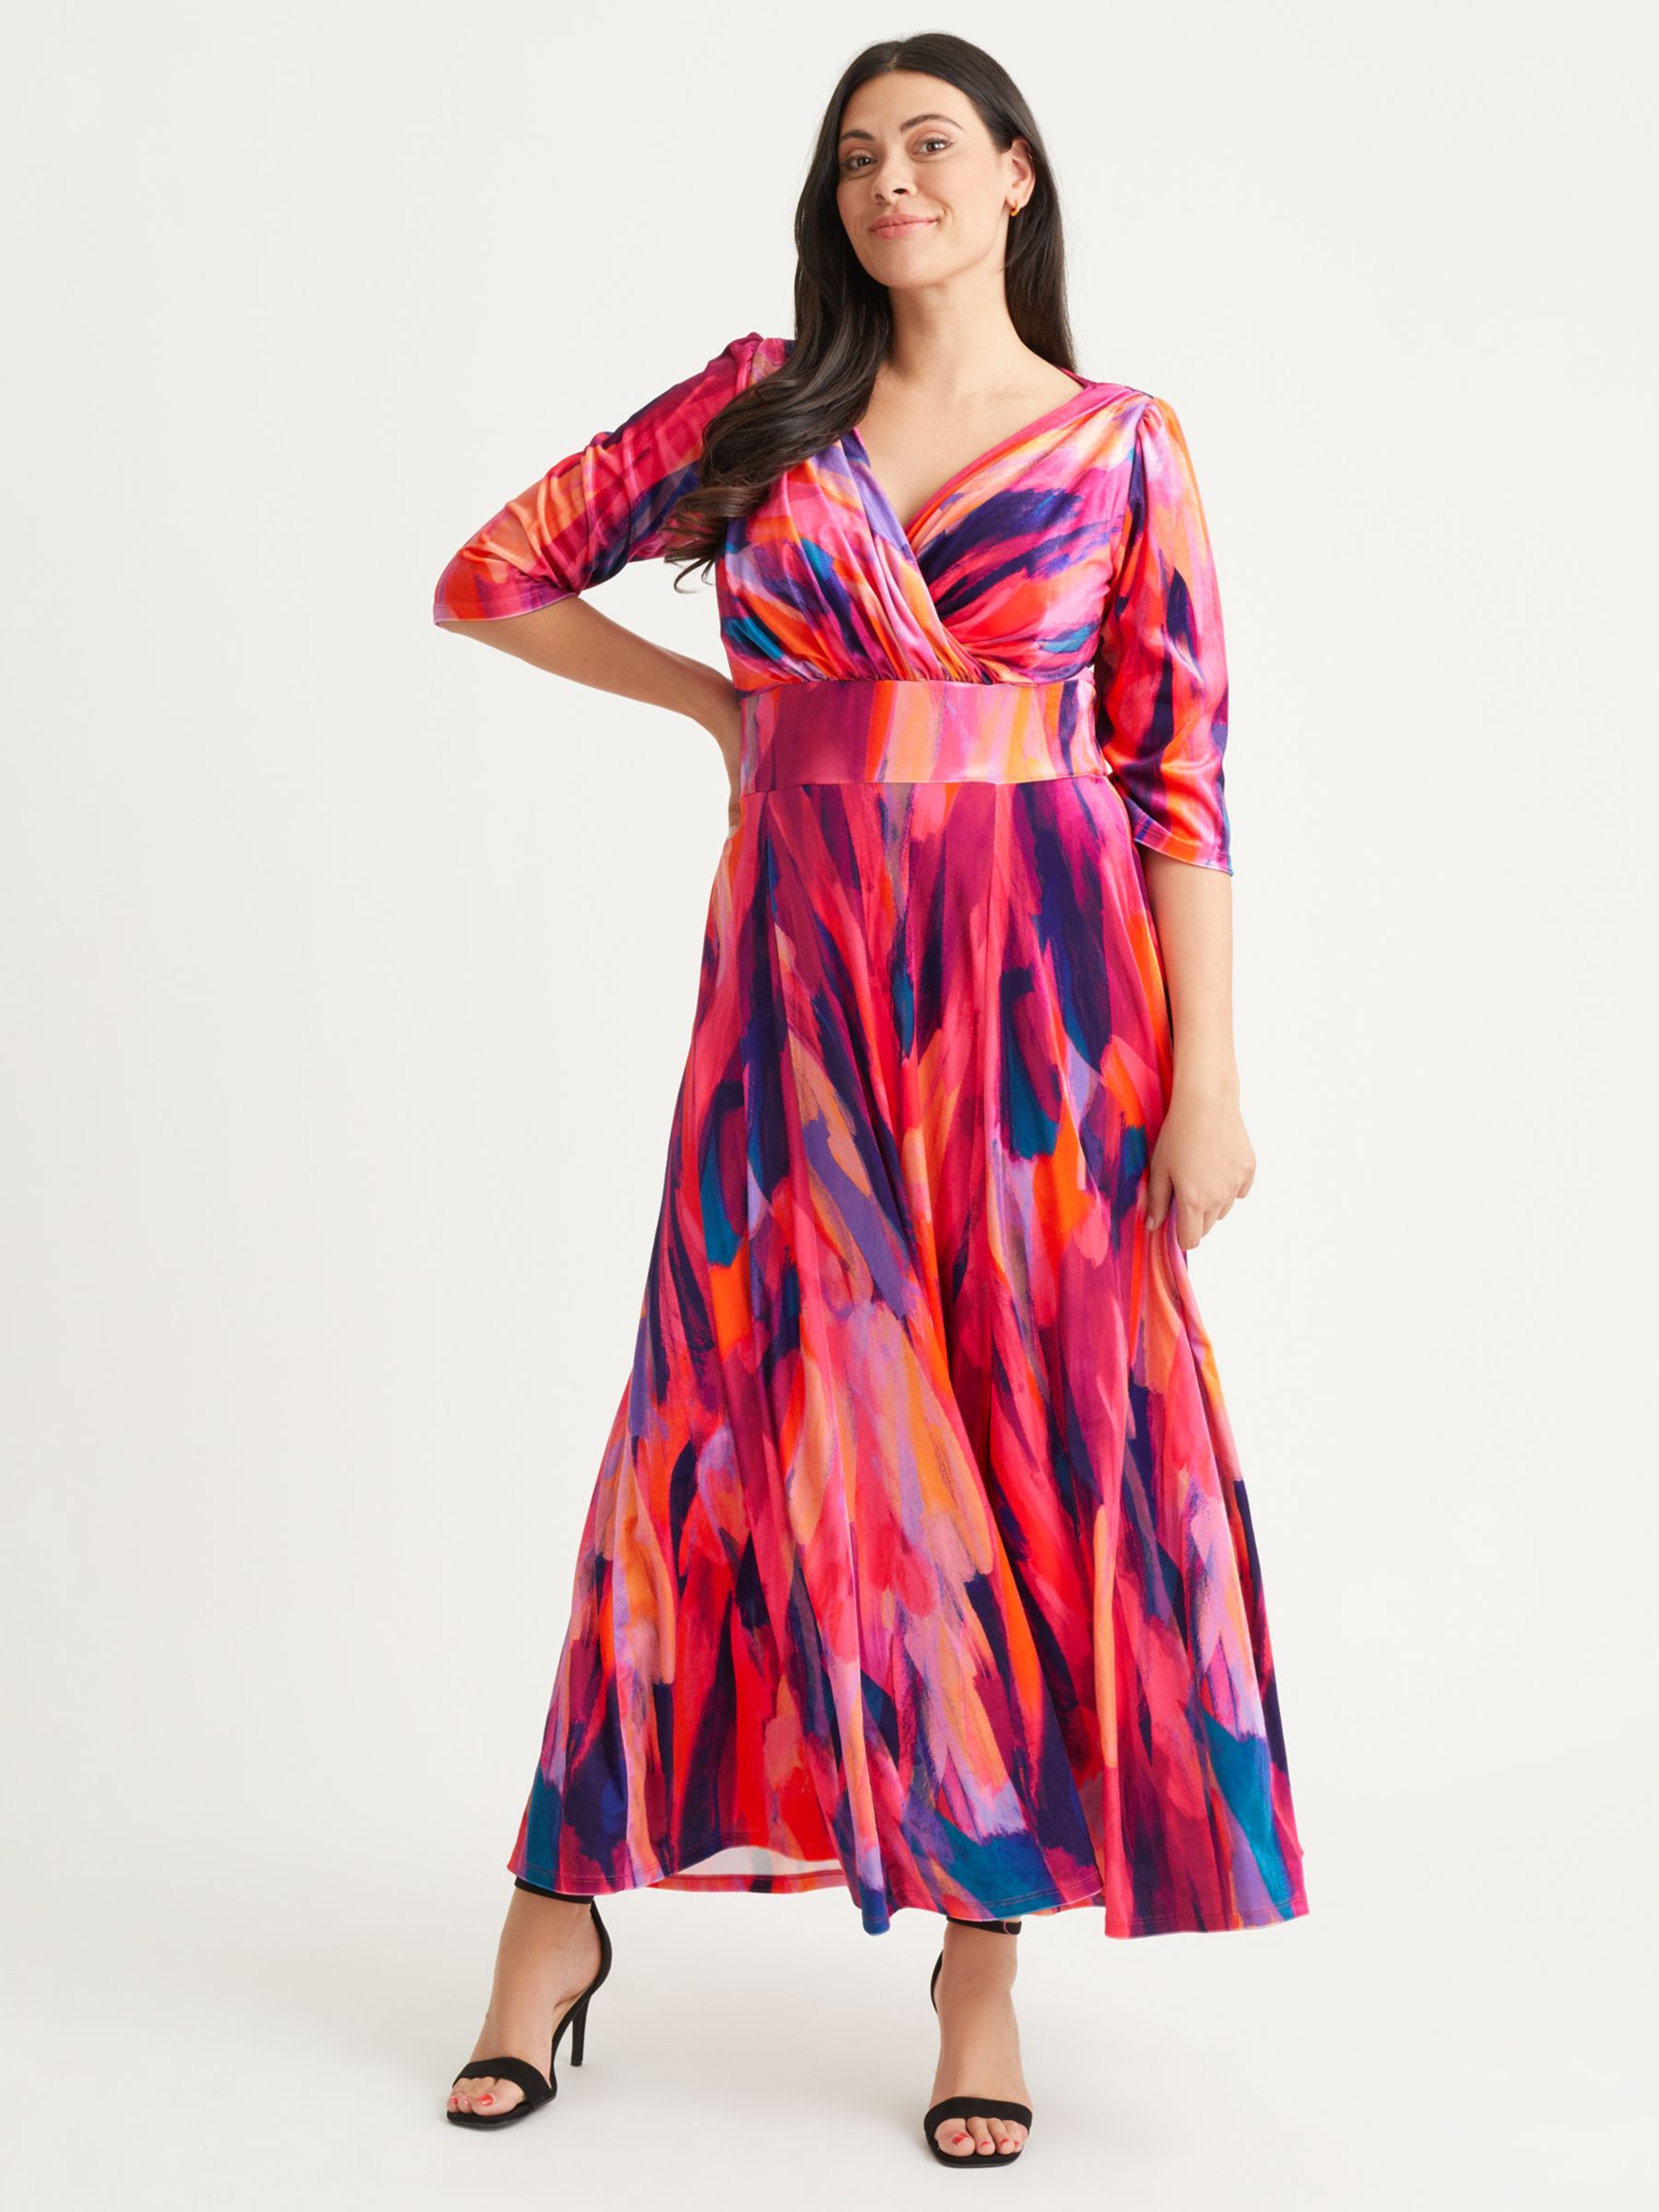 Бархатное платье макси Verity с абстрактным принтом Scarlett & Jo, оранжевый/розовый